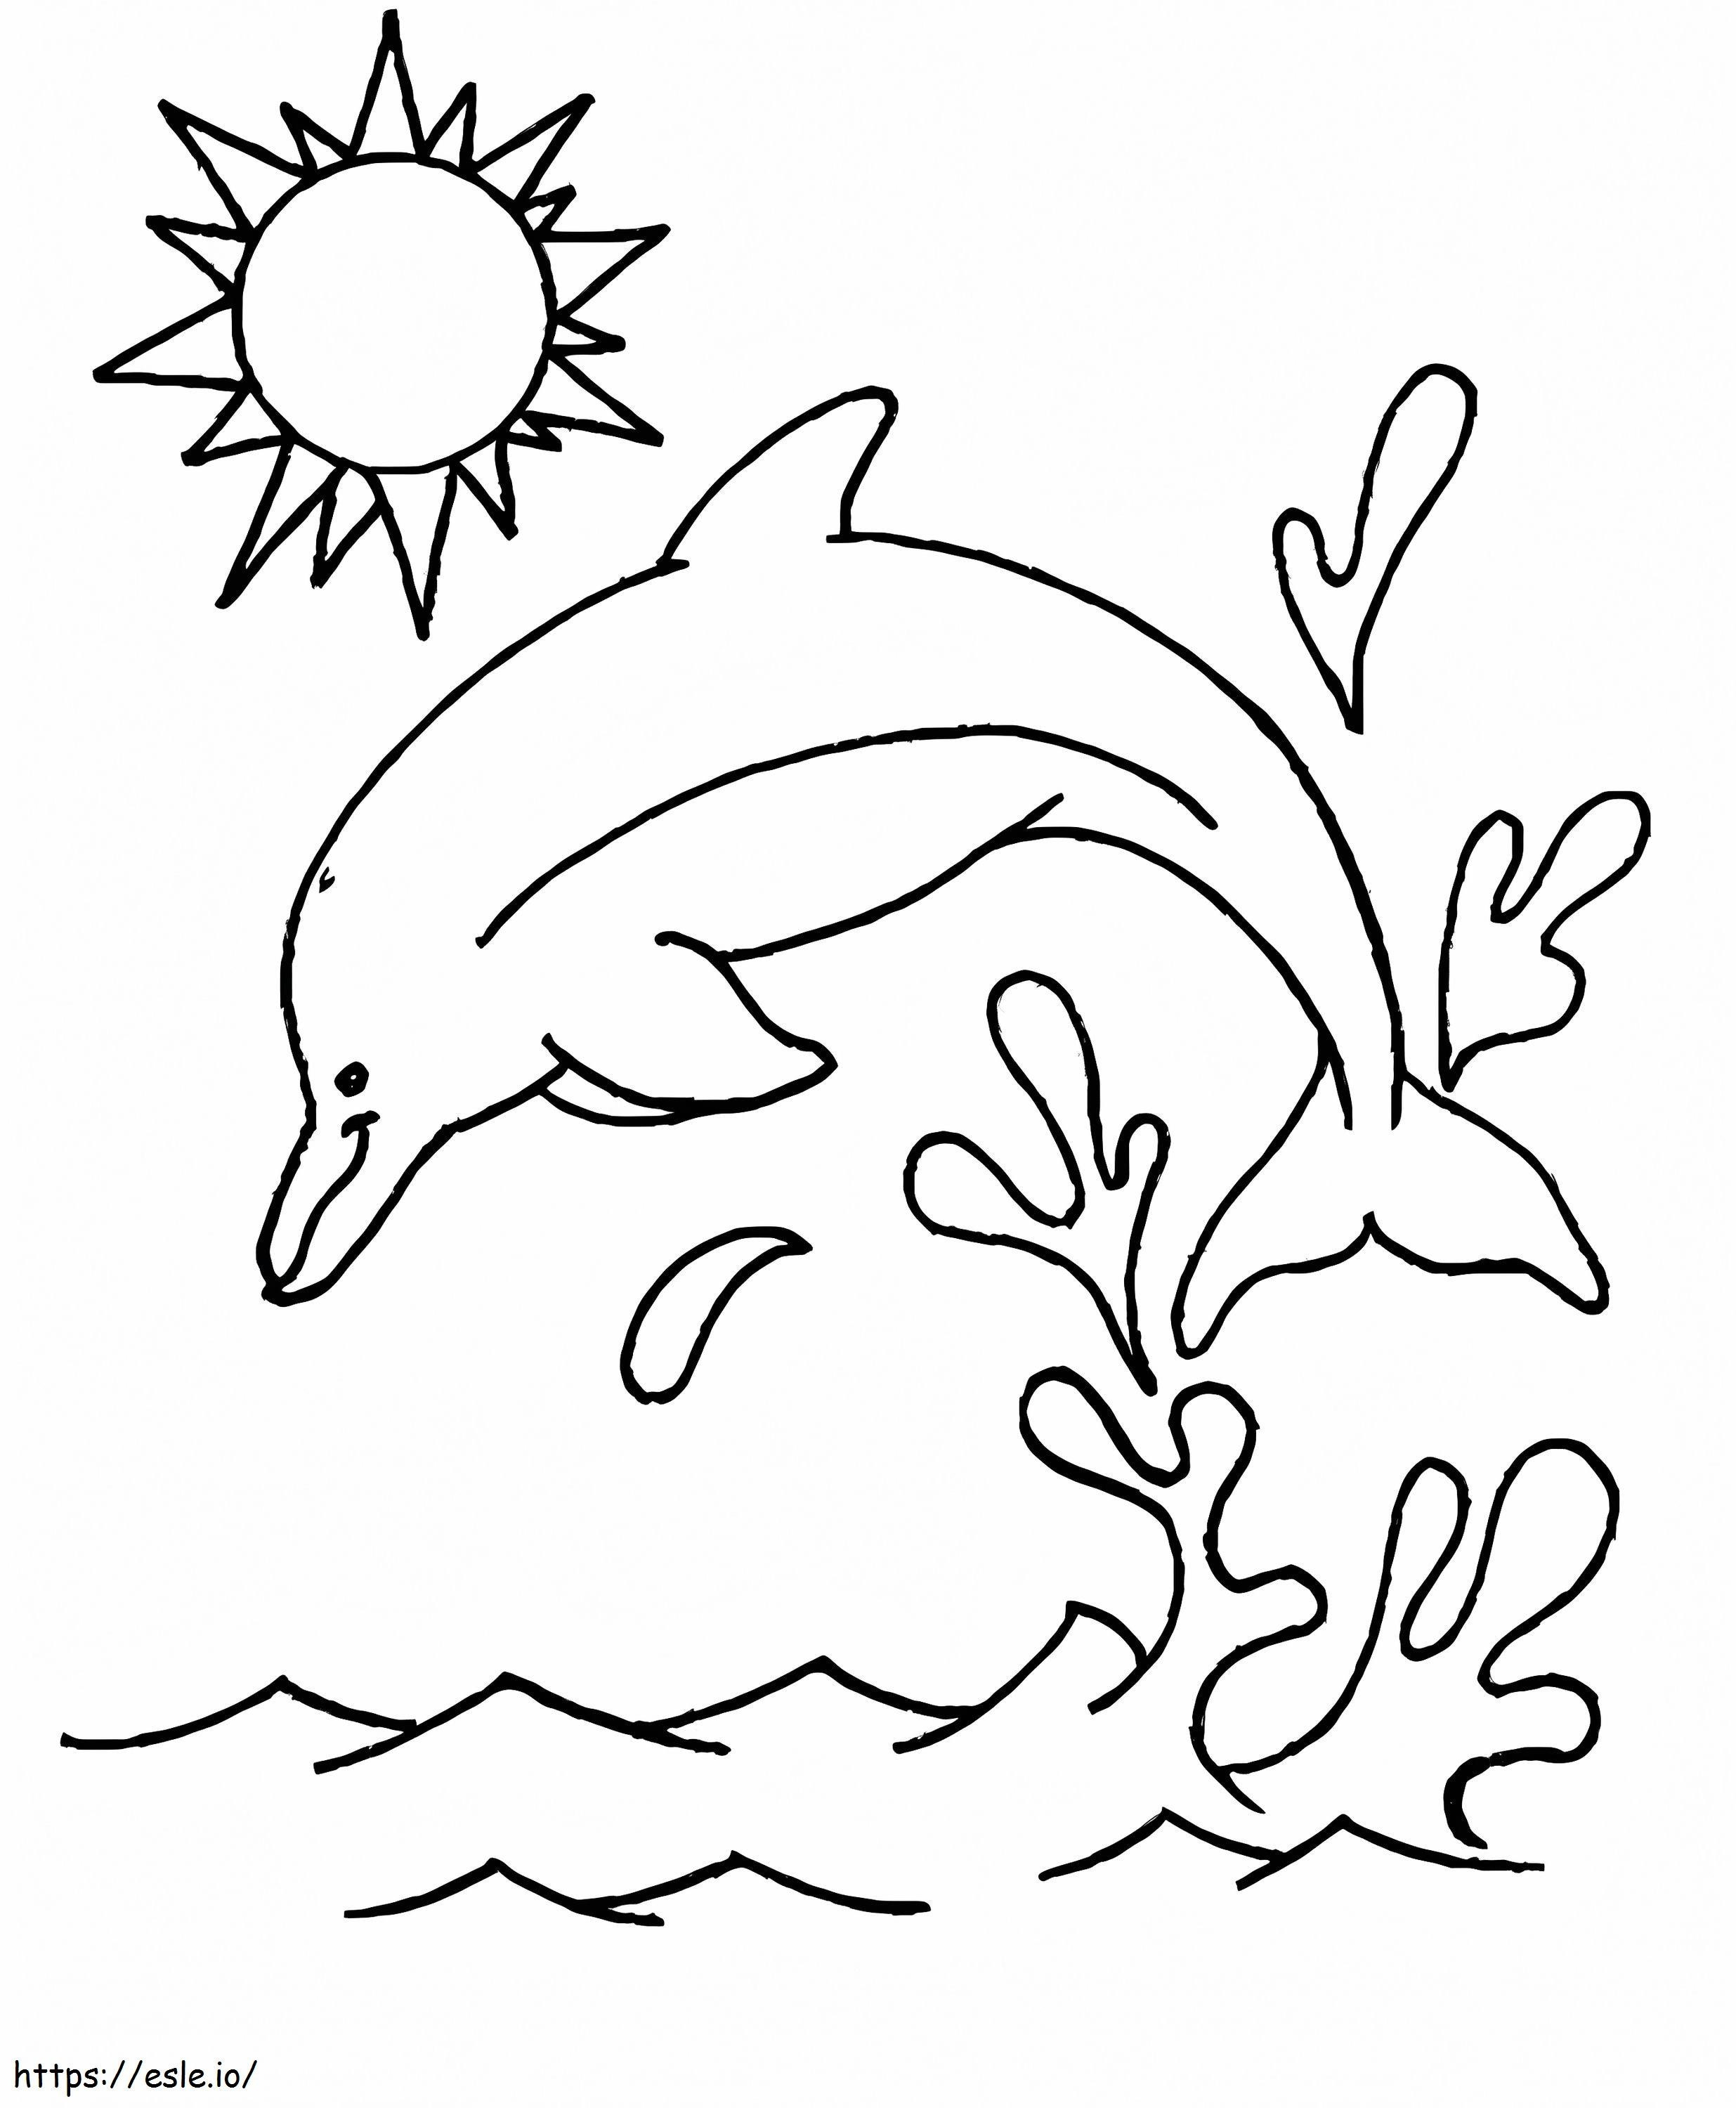 Delphinspringen ausmalbilder